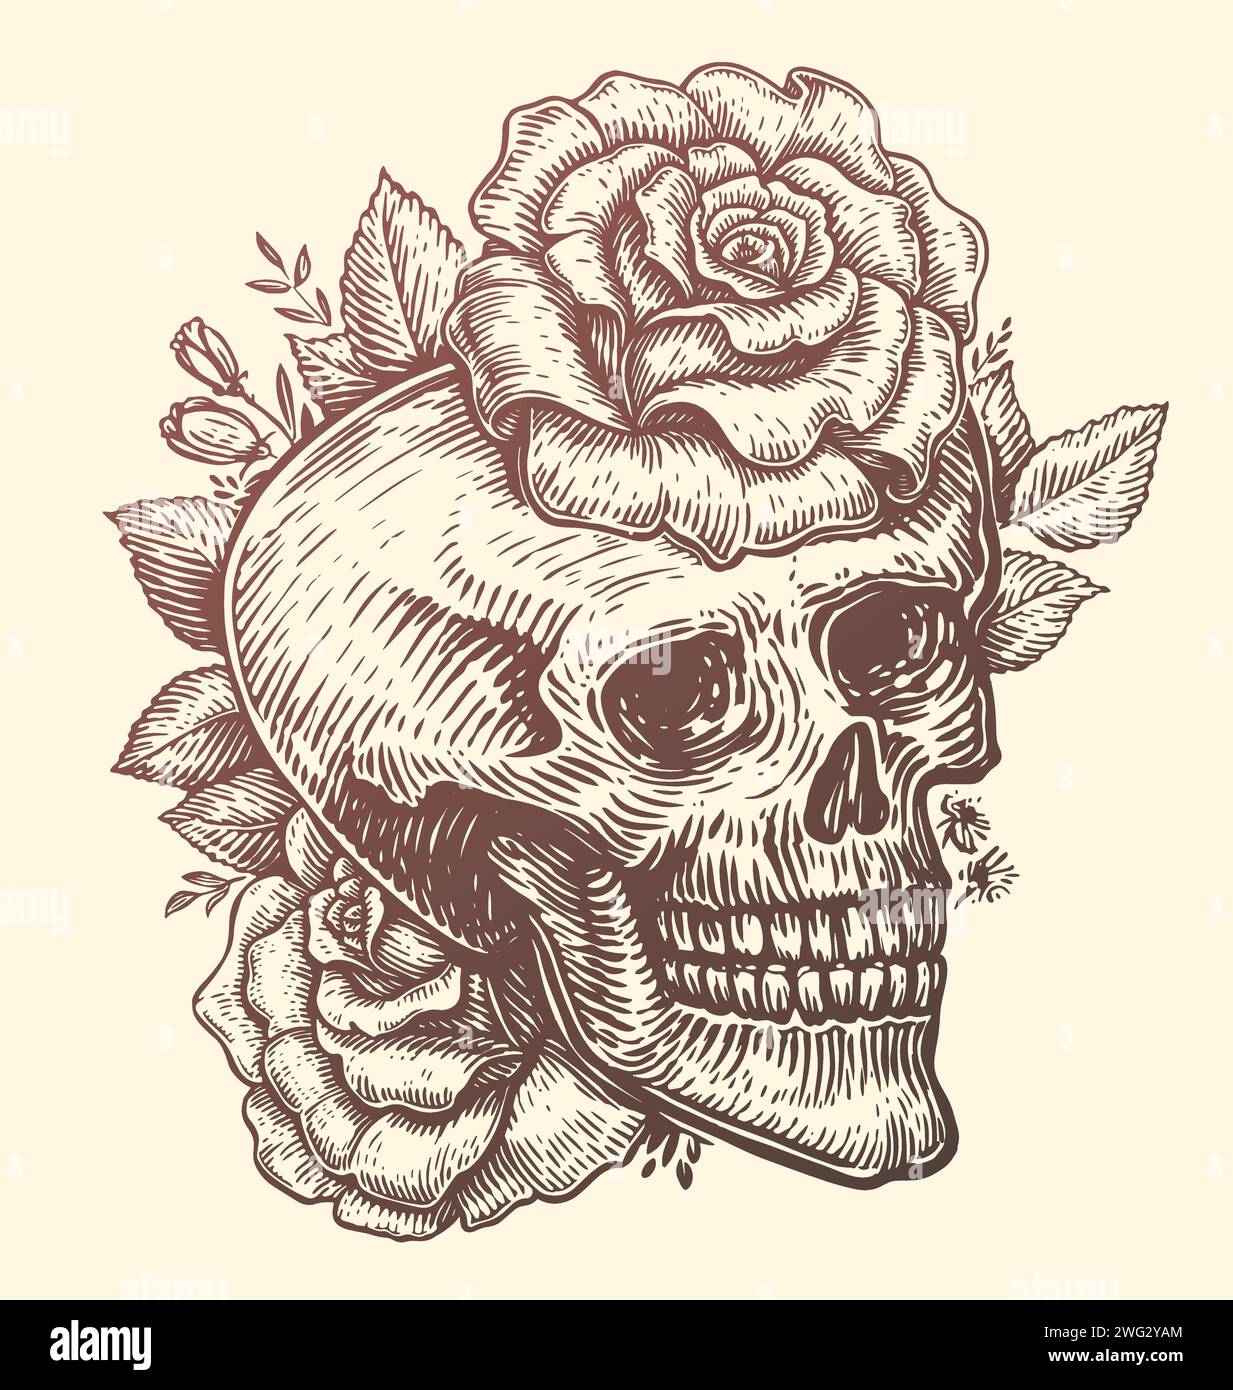 Cranio e rose, fiori con foglie. Illustrazione vettoriale vintage disegnata a mano Illustrazione Vettoriale